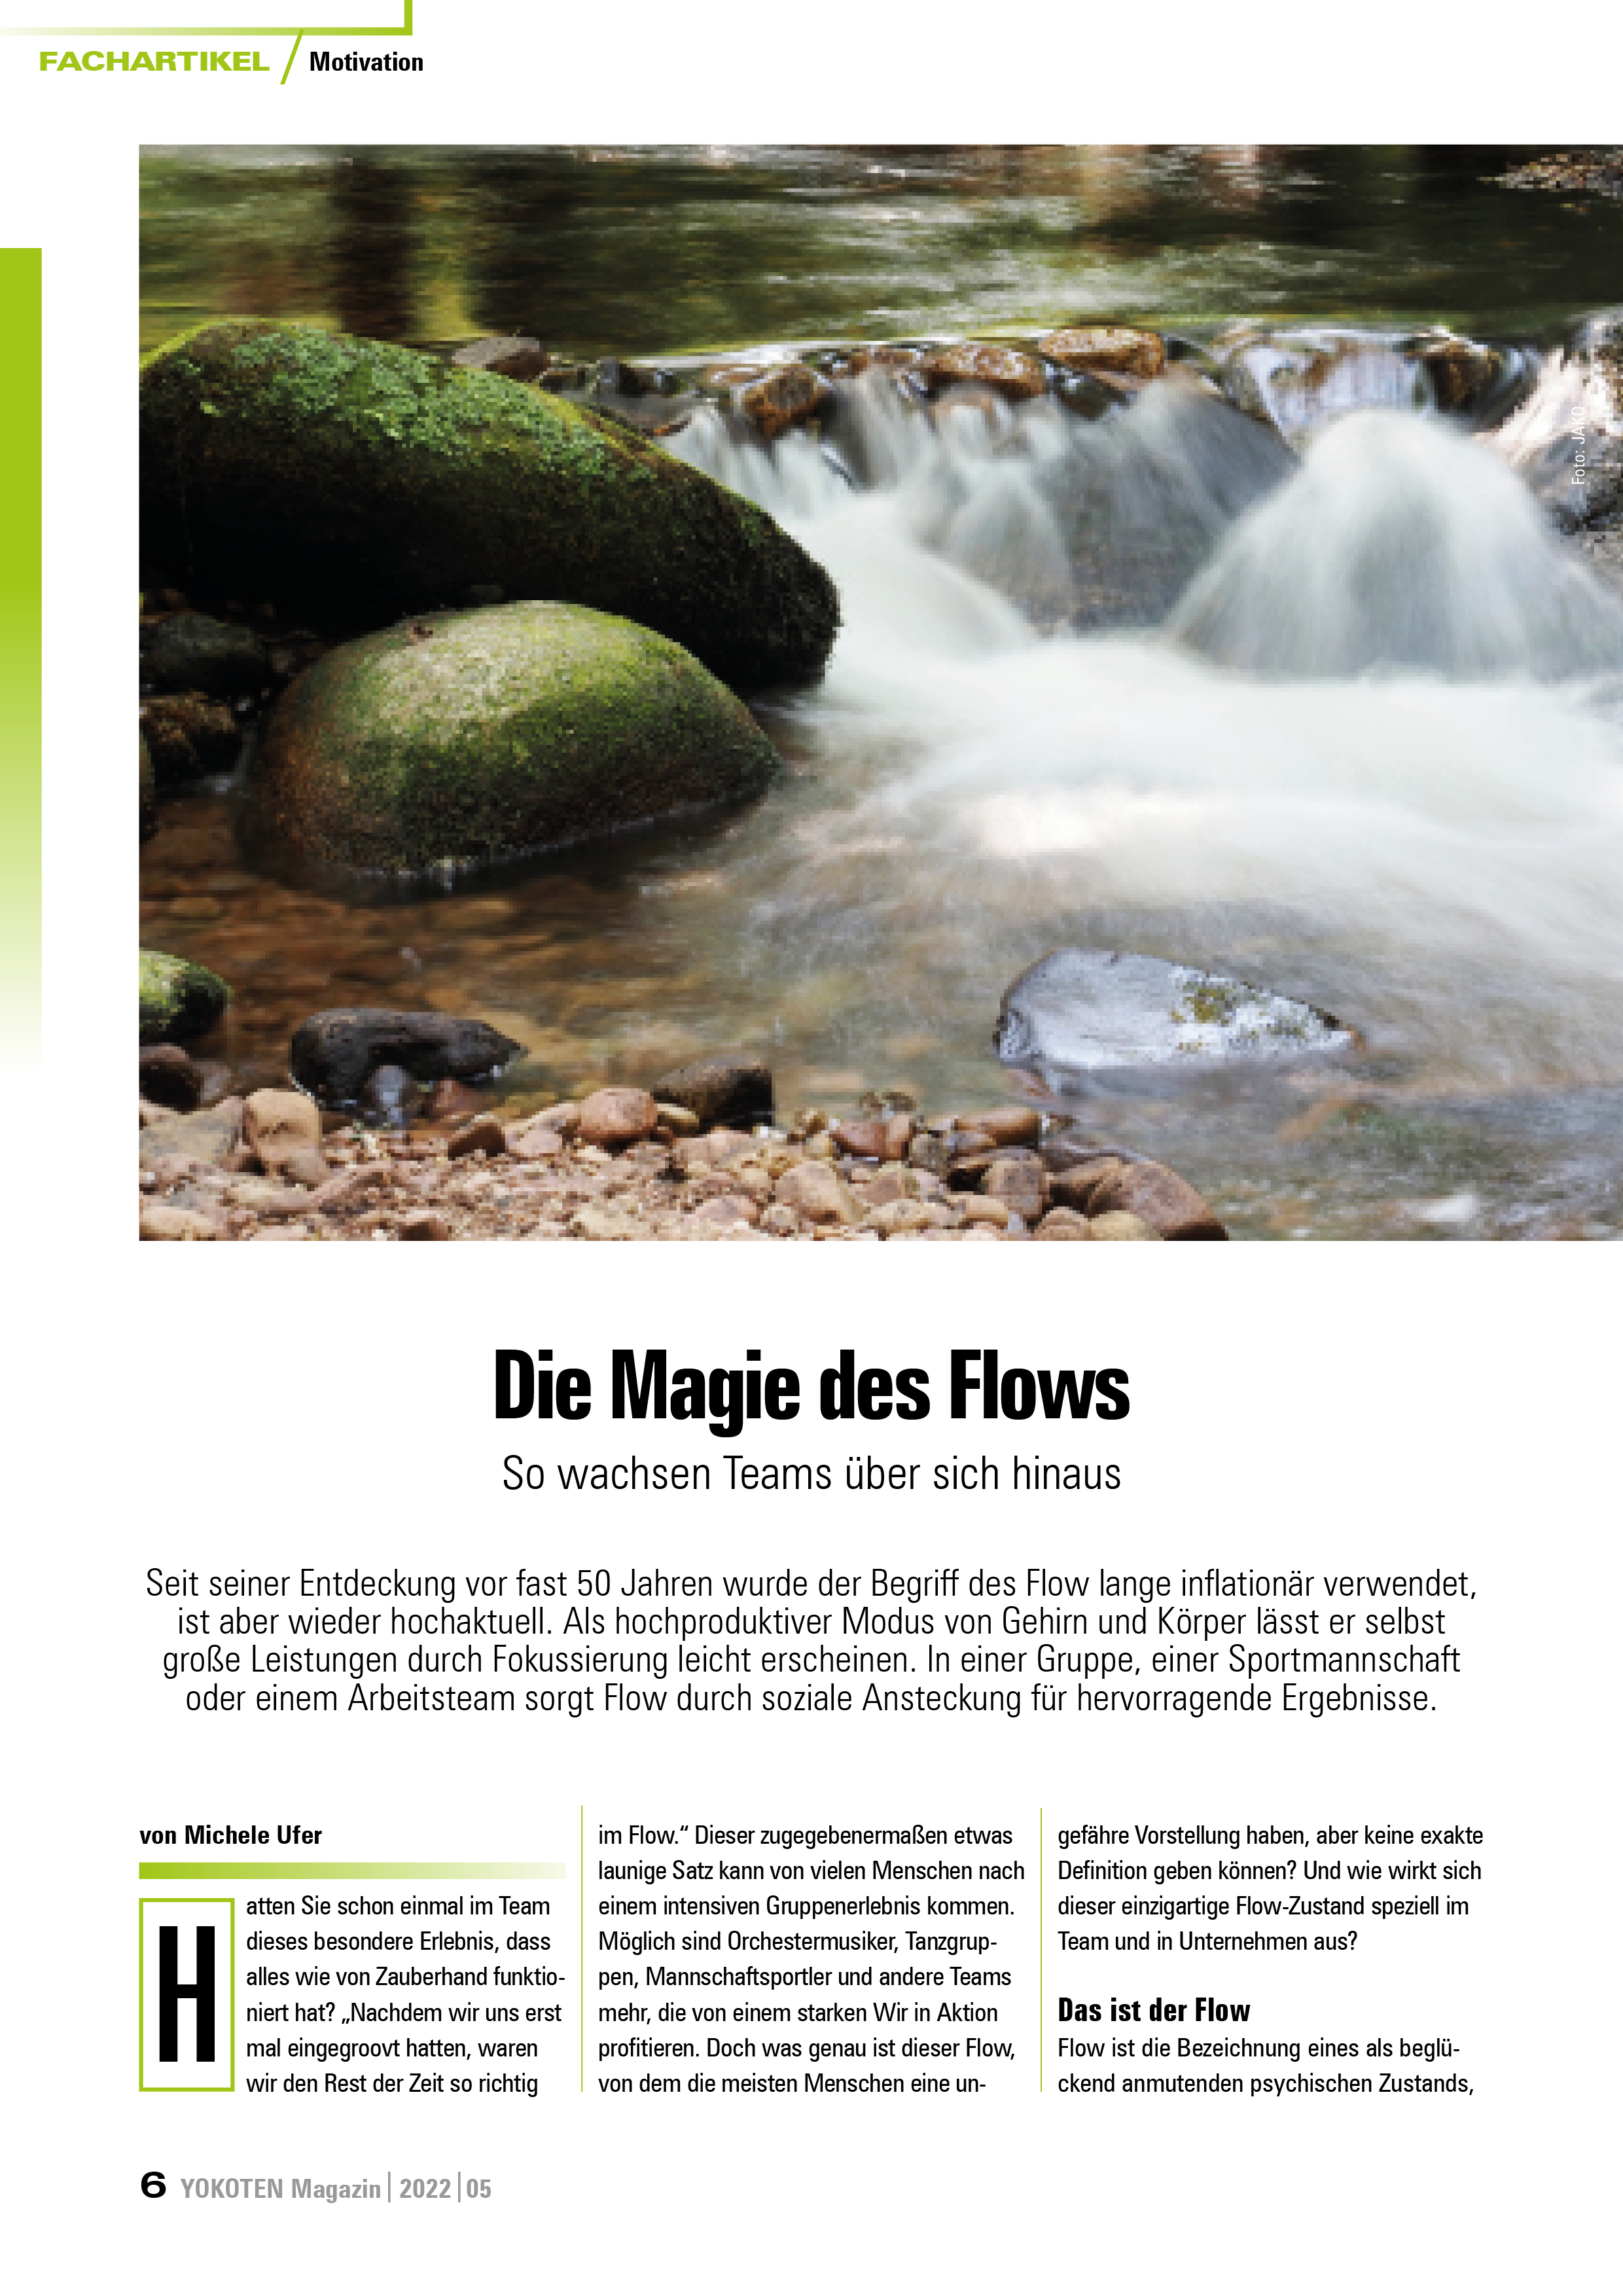 Die Magie des Flows - Artikel aus Fachmagazin YOKOTEN 2022-05